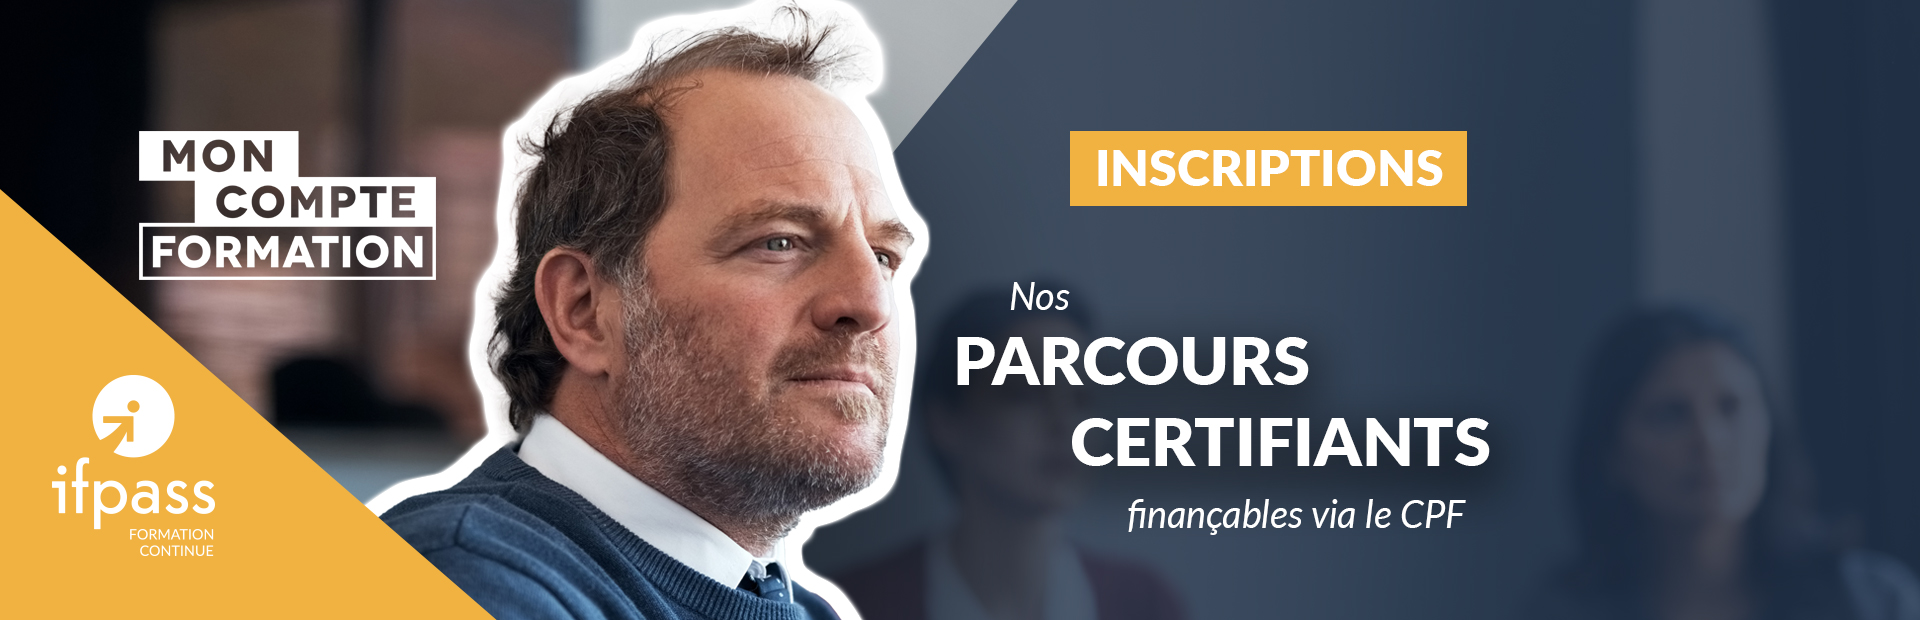 Parcours_certifiants_CPF_1920x620